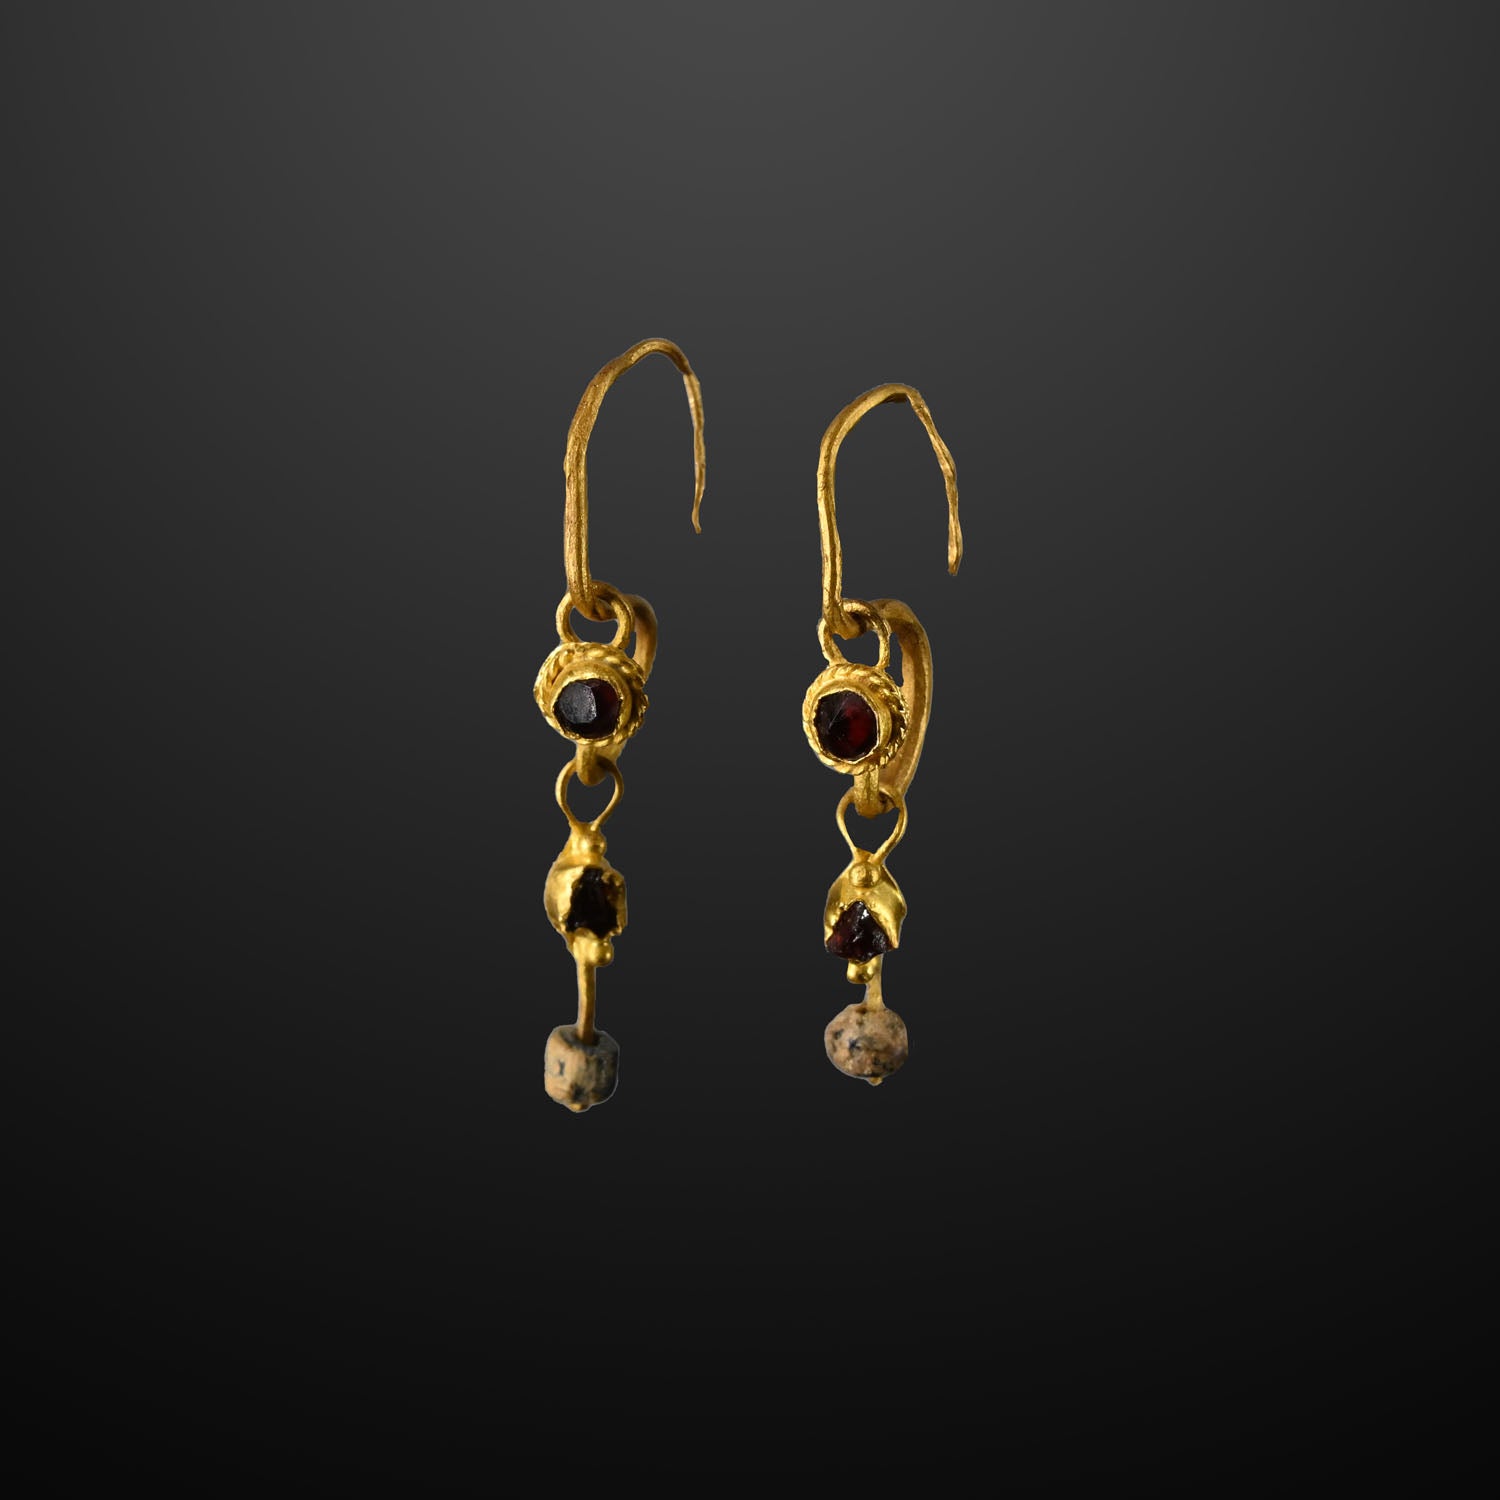 Ein Paar römische Ohrhänger aus Gold und Granat, ca. 1. Jahrhundert n. Chr